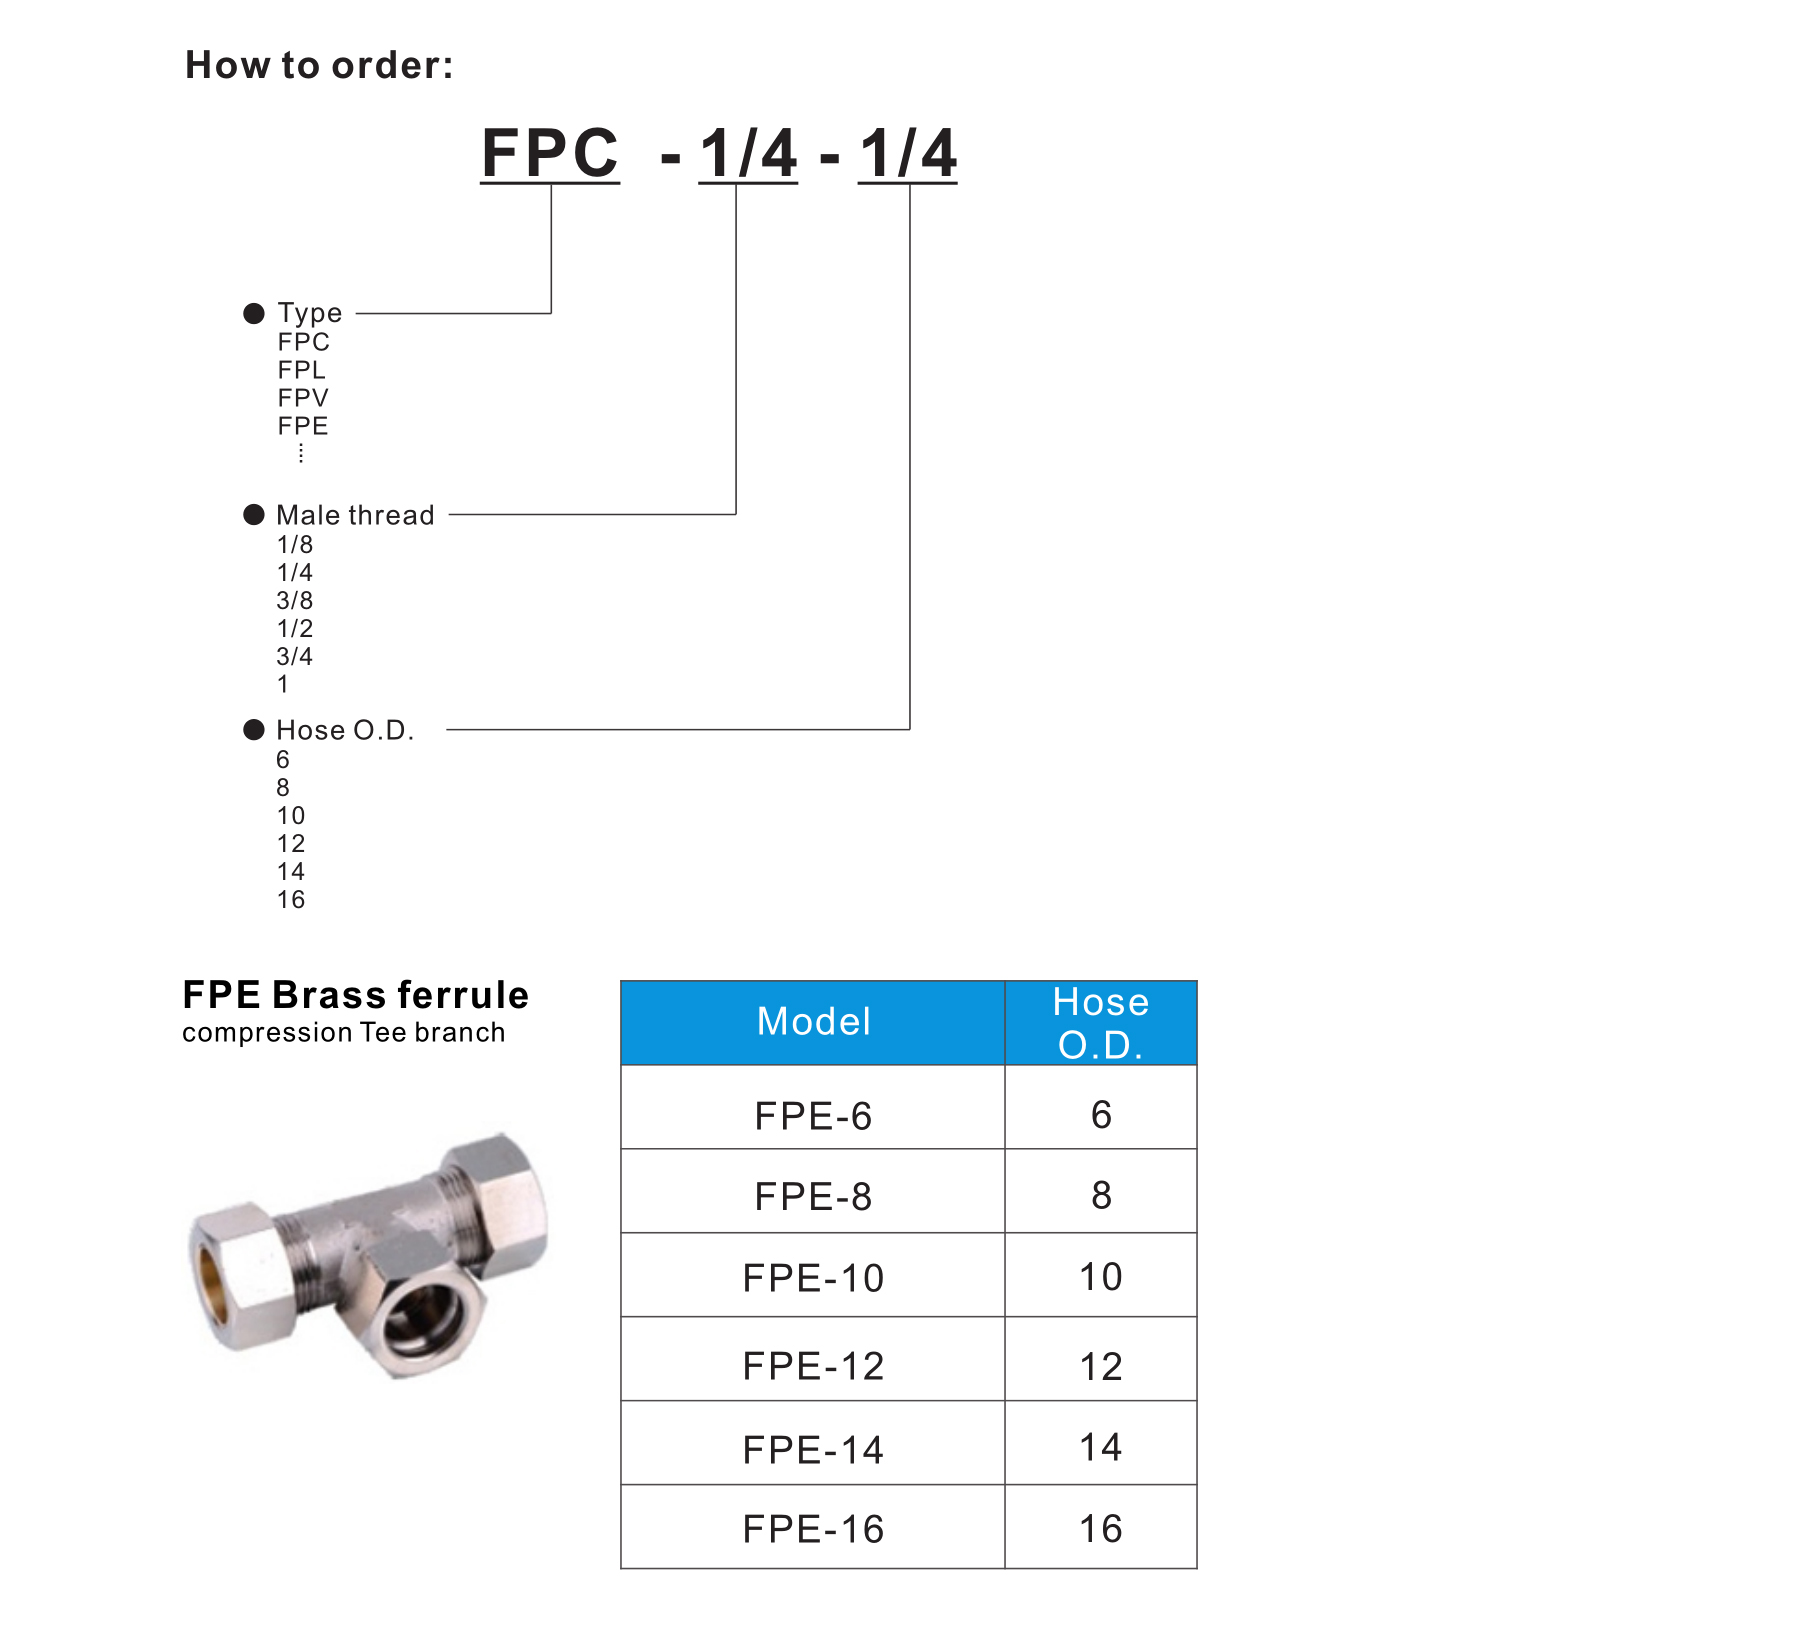 FPE Brass ferrule compression Tee branch